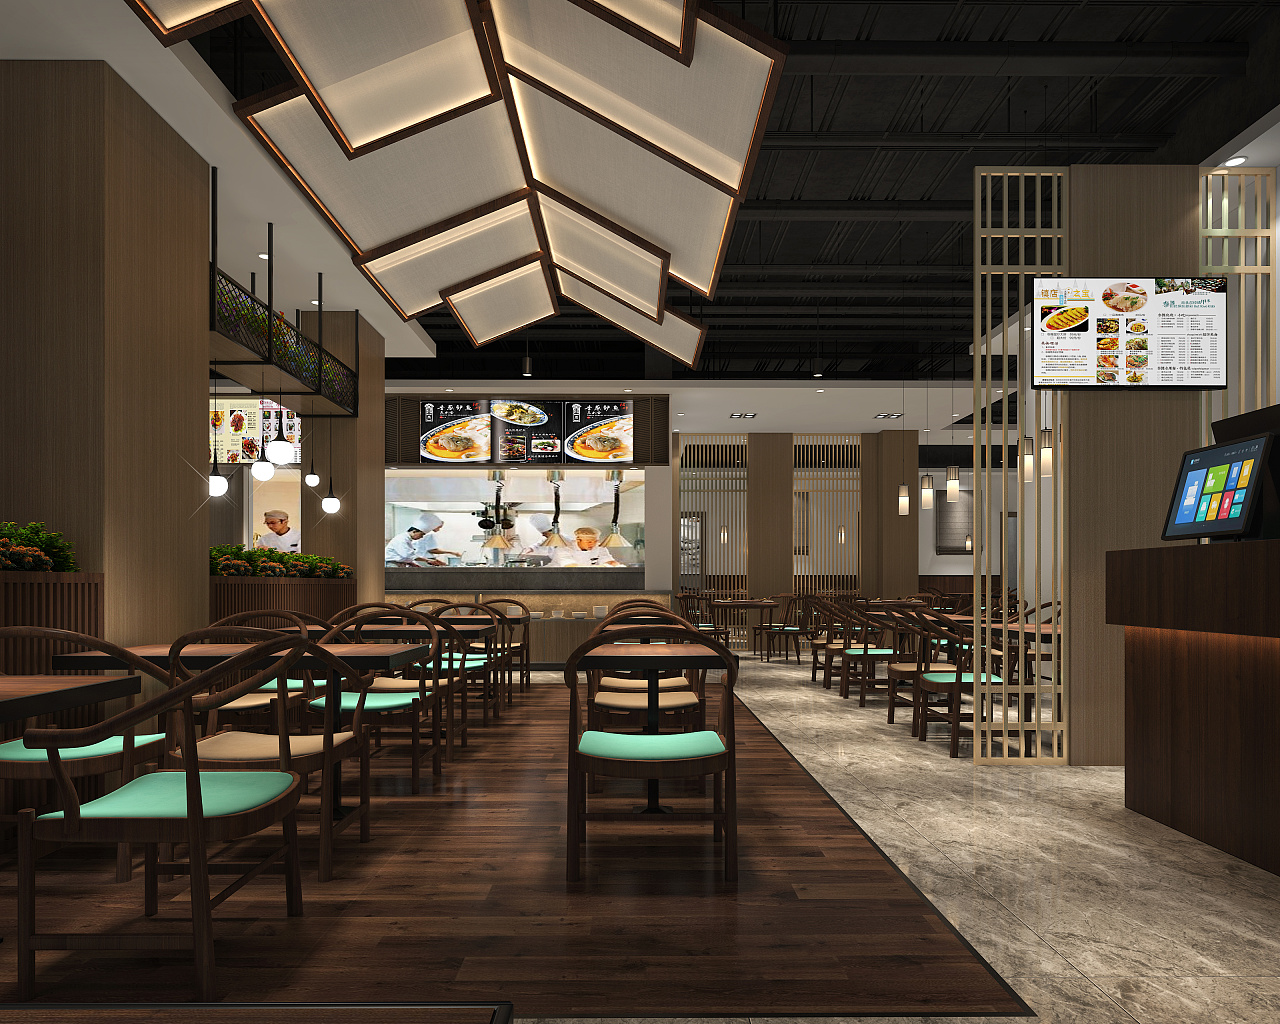 新发现餐厅杭州新发现餐厅：美食与创意的完美结合 杭州新发现餐厅